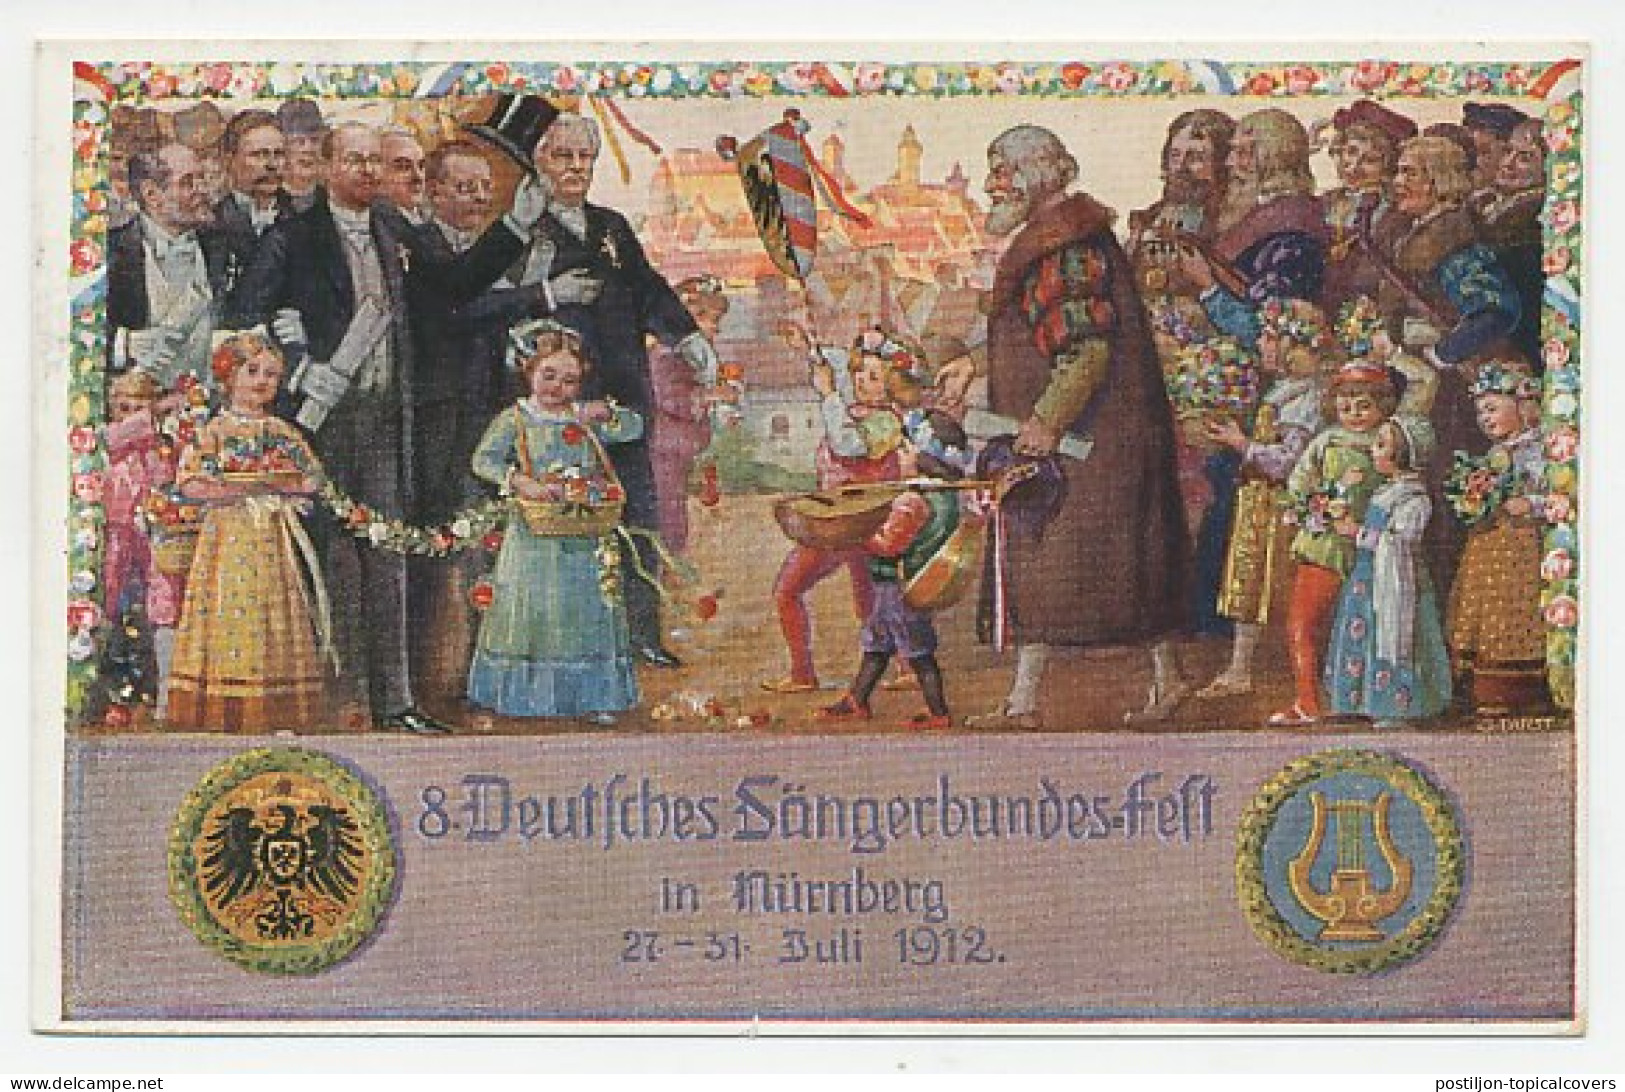 Postal Stationery Bayern 1912 Sangerbundesfest Nurnberg - Singing - Harp - Lute - Musique